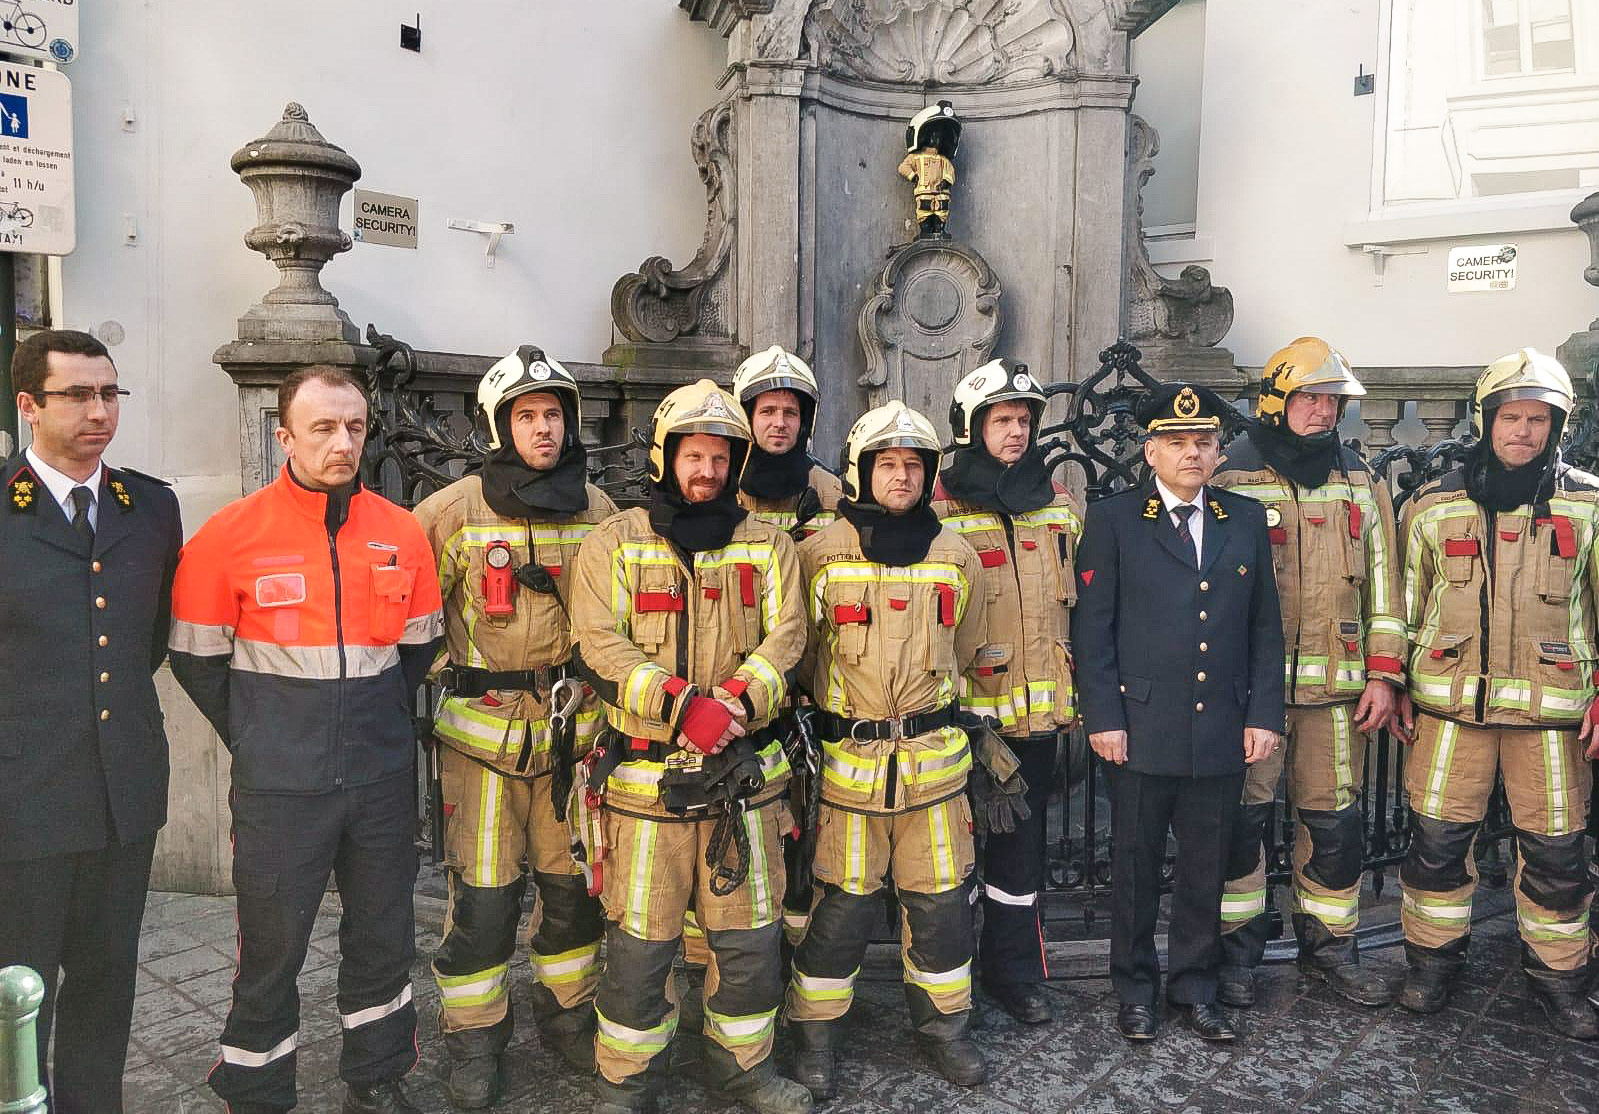 Les pompiers bruxellois rendent hommage aux victimes des attentats du 22 mars